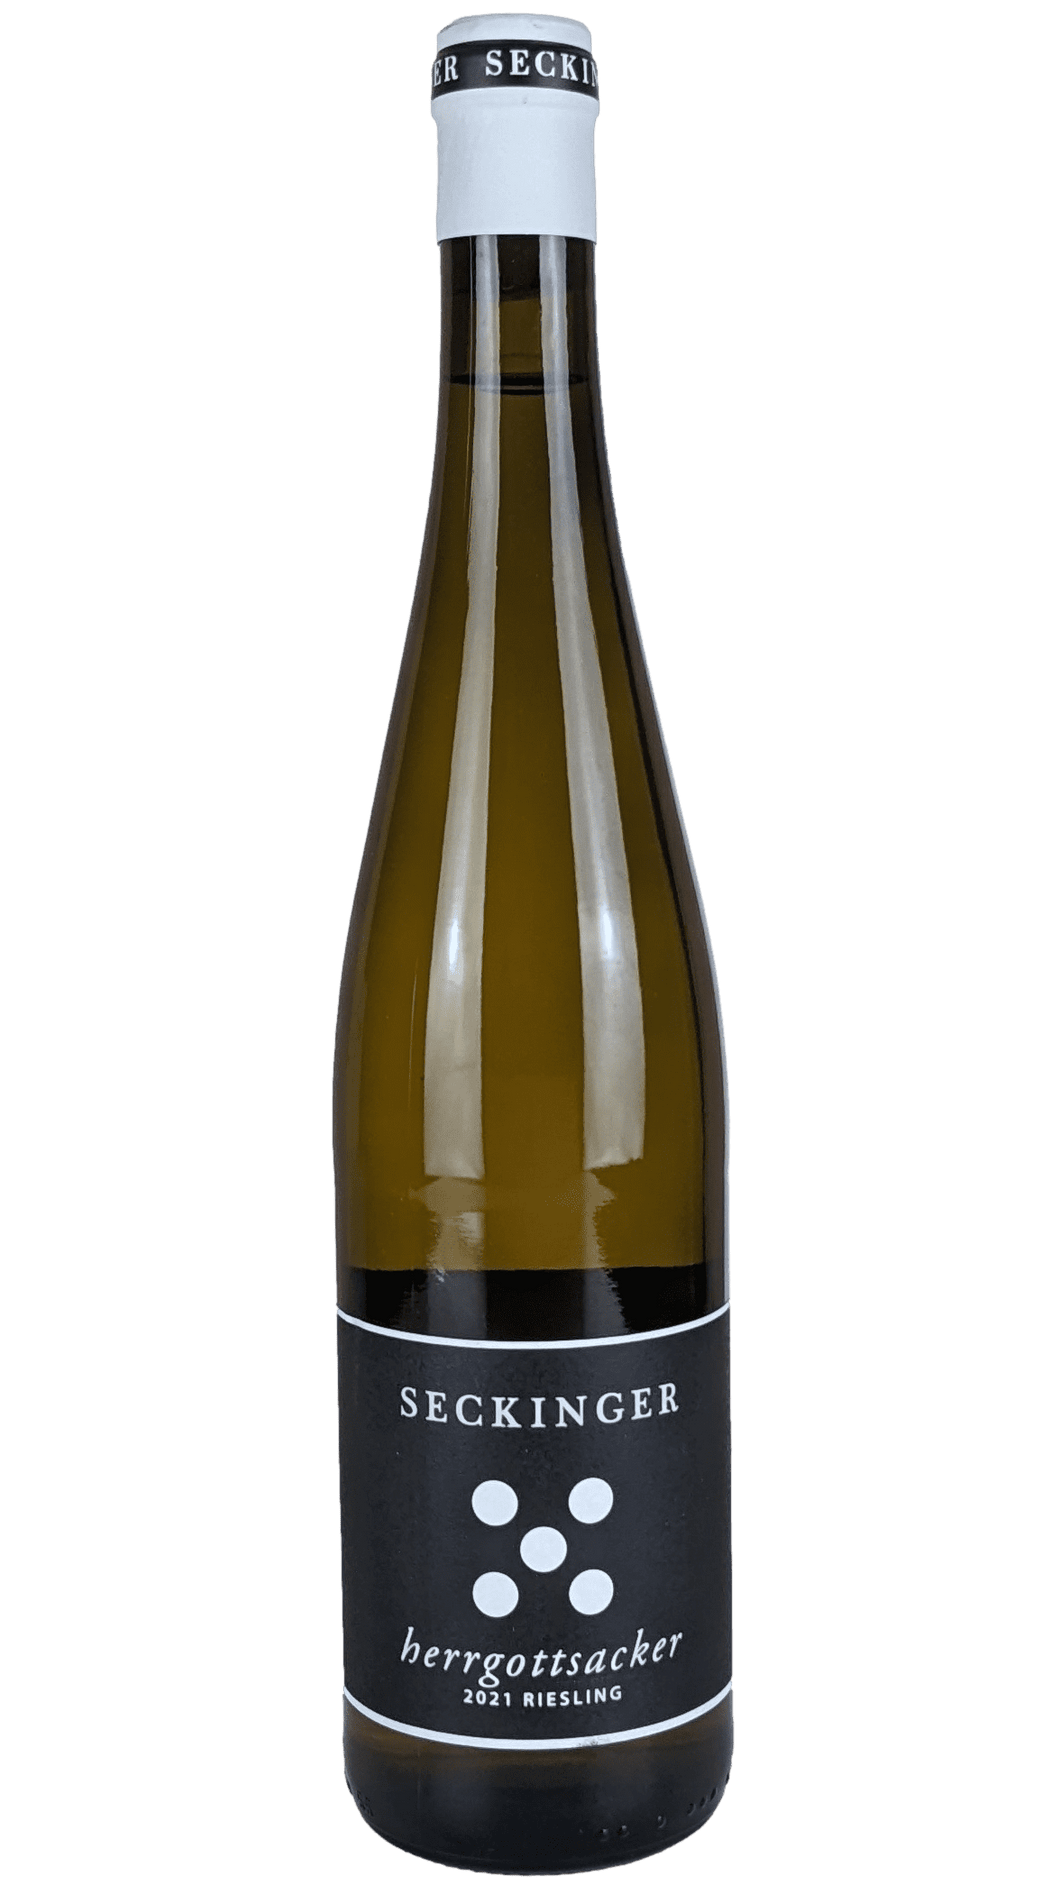 Seckinger - Riesling Hergottsacker 2021